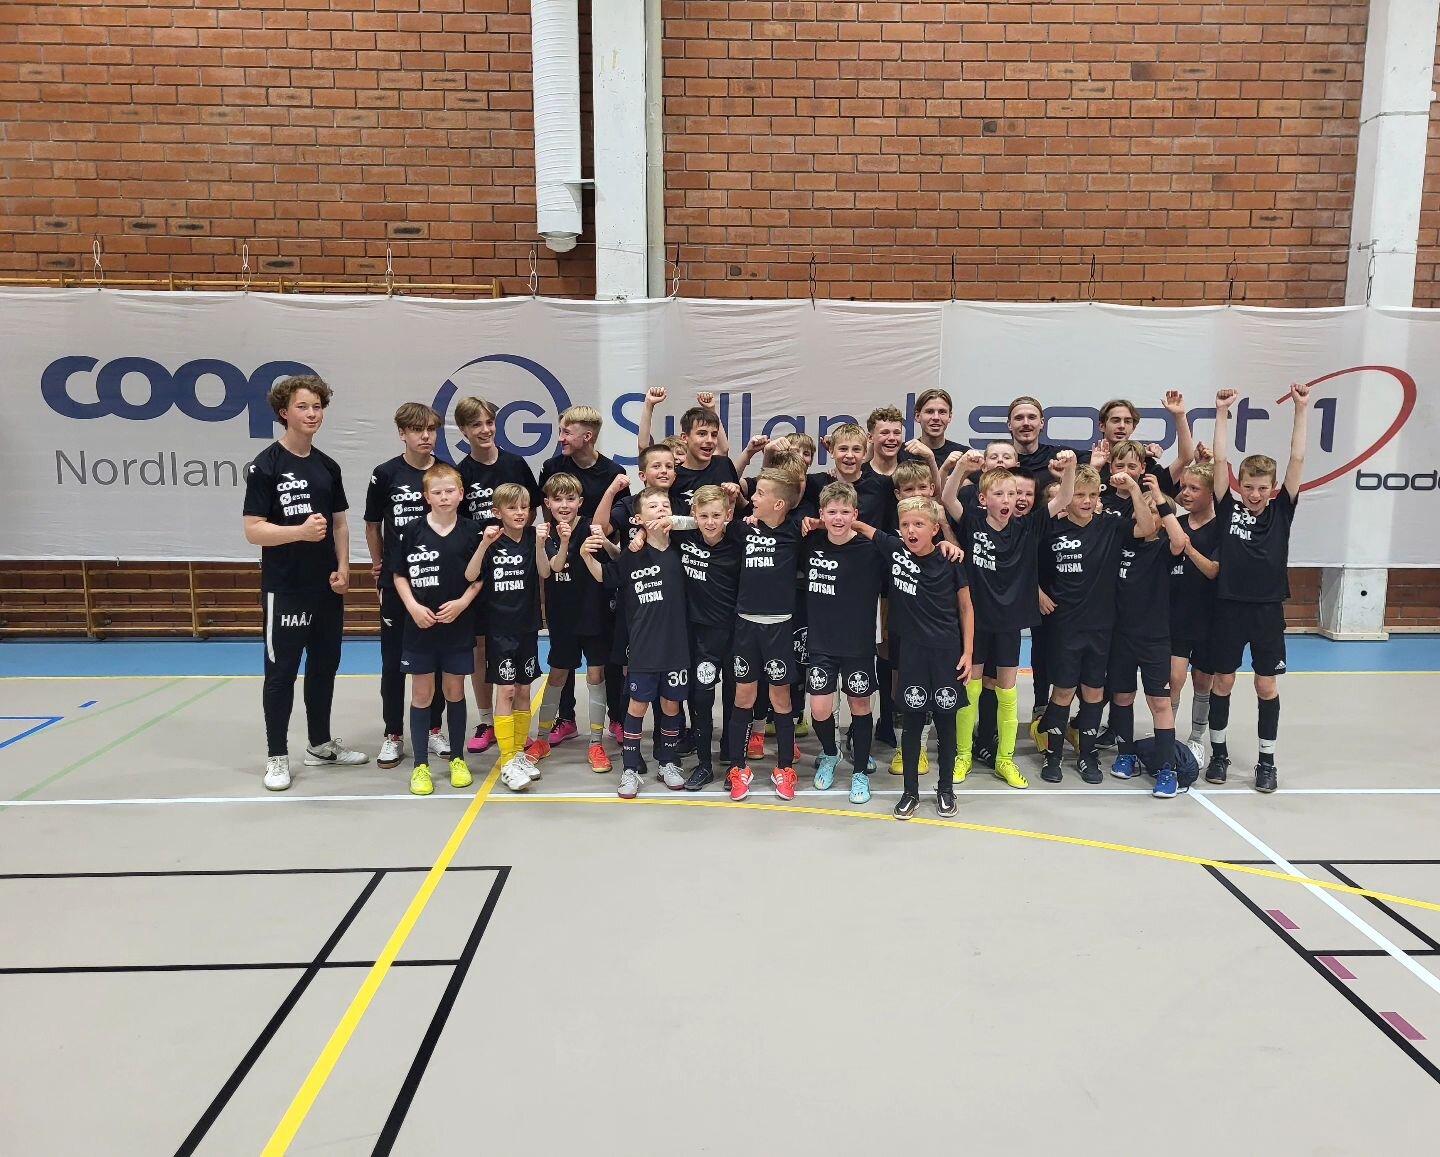 Coop Nordland Futsaldag vell gjennomf&oslash;rt.

Tusen takk til alle involverte👏